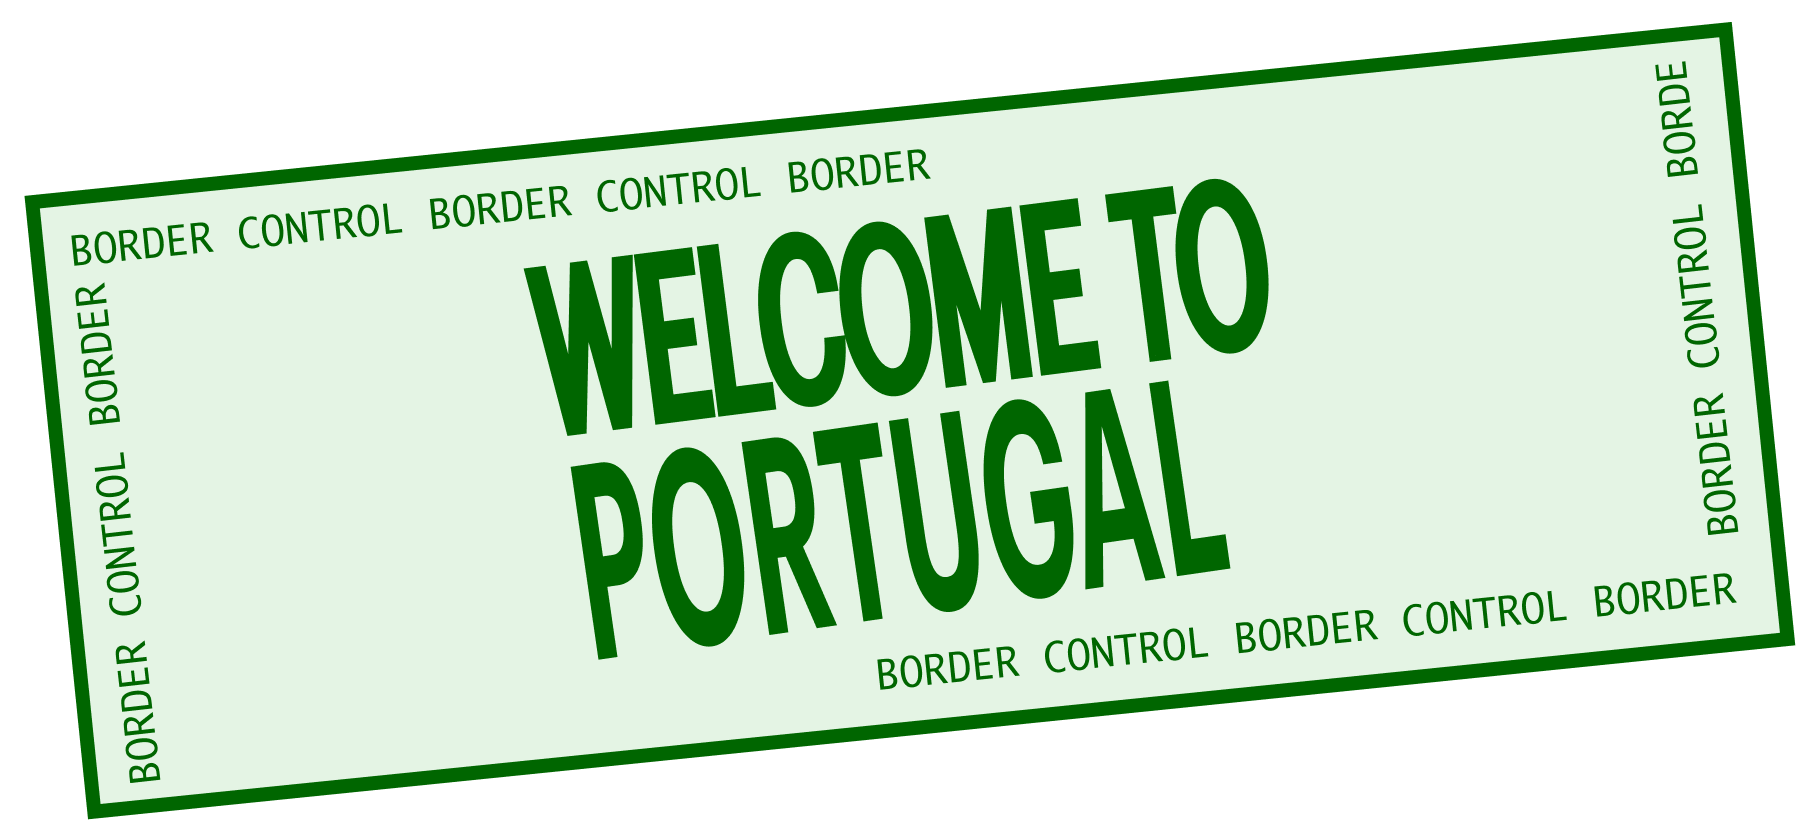 Как получить визу для бизнеса в Португалии